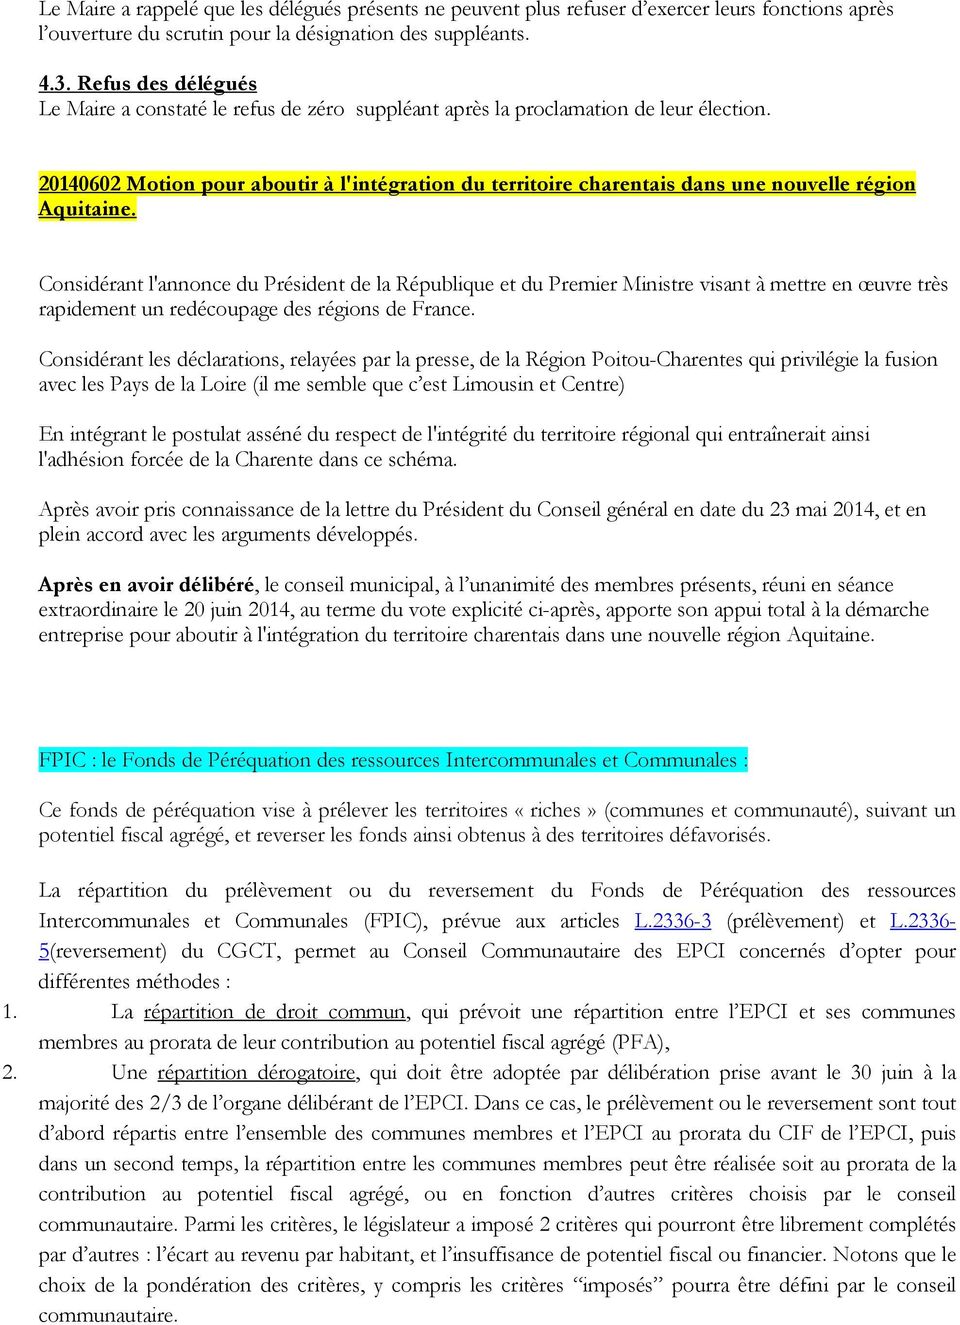 20140602 Motion pour aboutir à l'intégration du territoire charentais dans une nouvelle région Aquitaine.